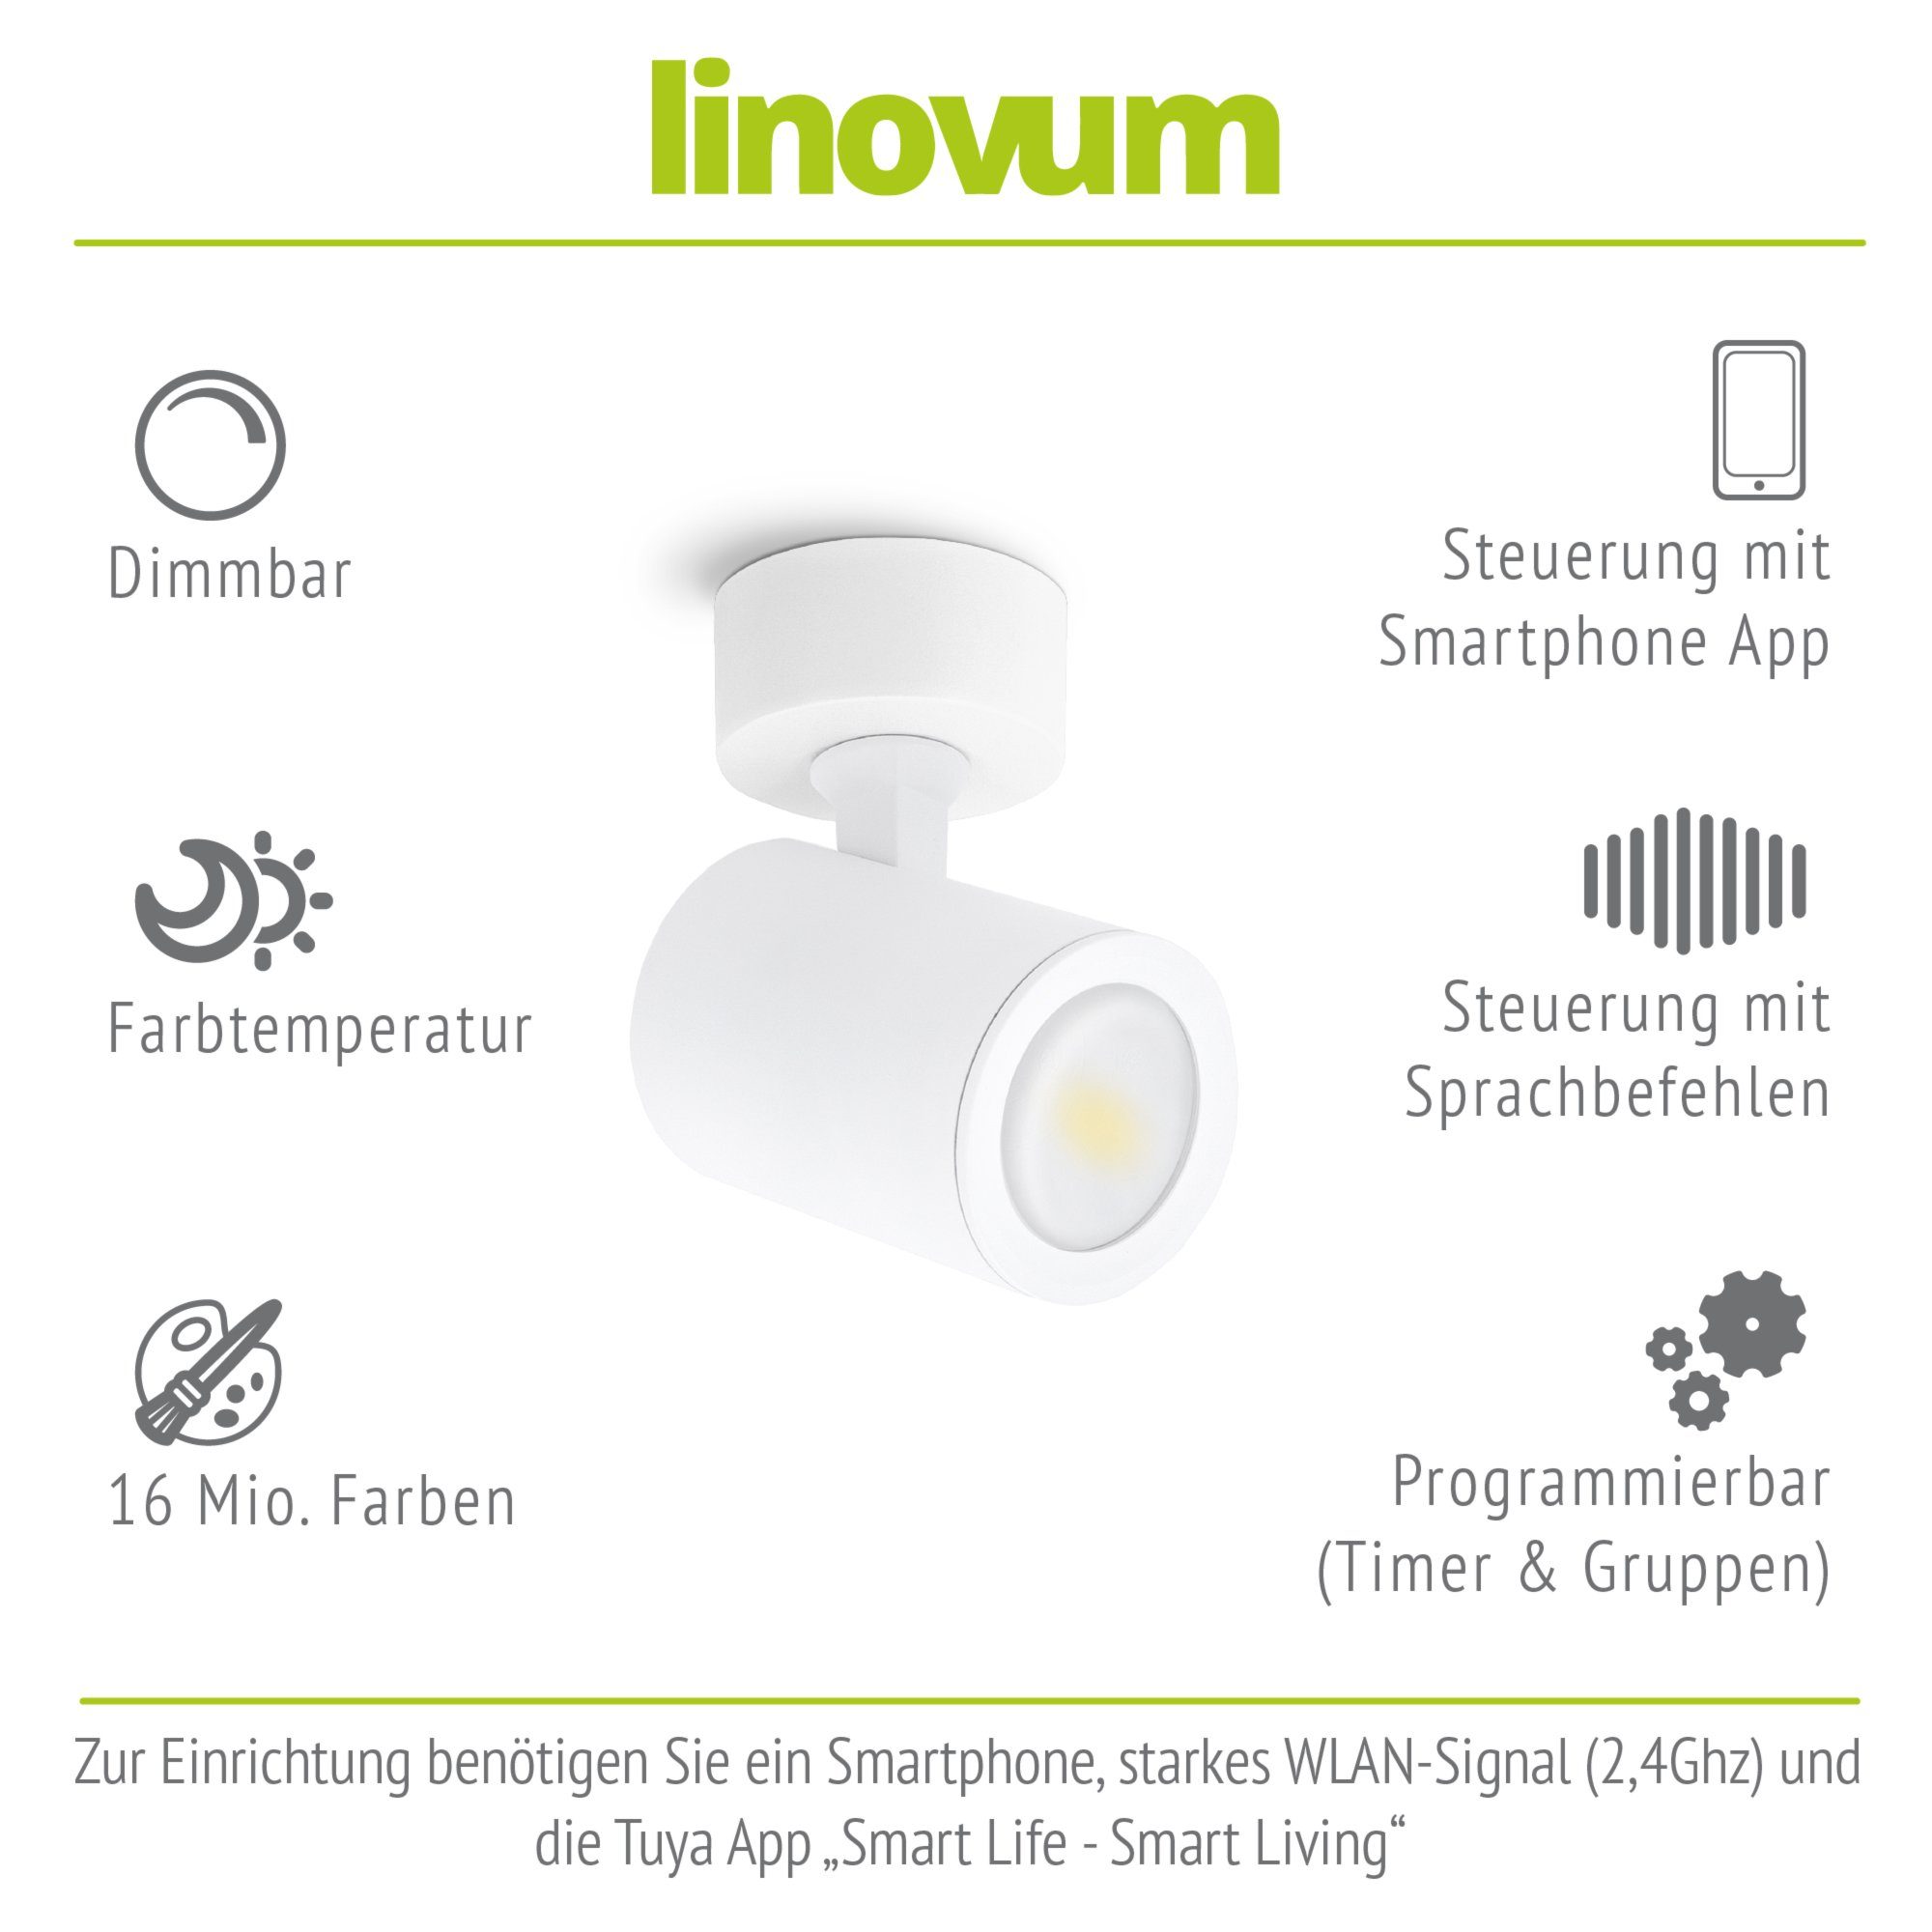 linovum LED Aufbaustrahler TENJO Deckenspot schwenkbar 1-flammig Smart drehbar weiss inklusive, Leuchtmittel Leuchtmittel & GU10, inklusive